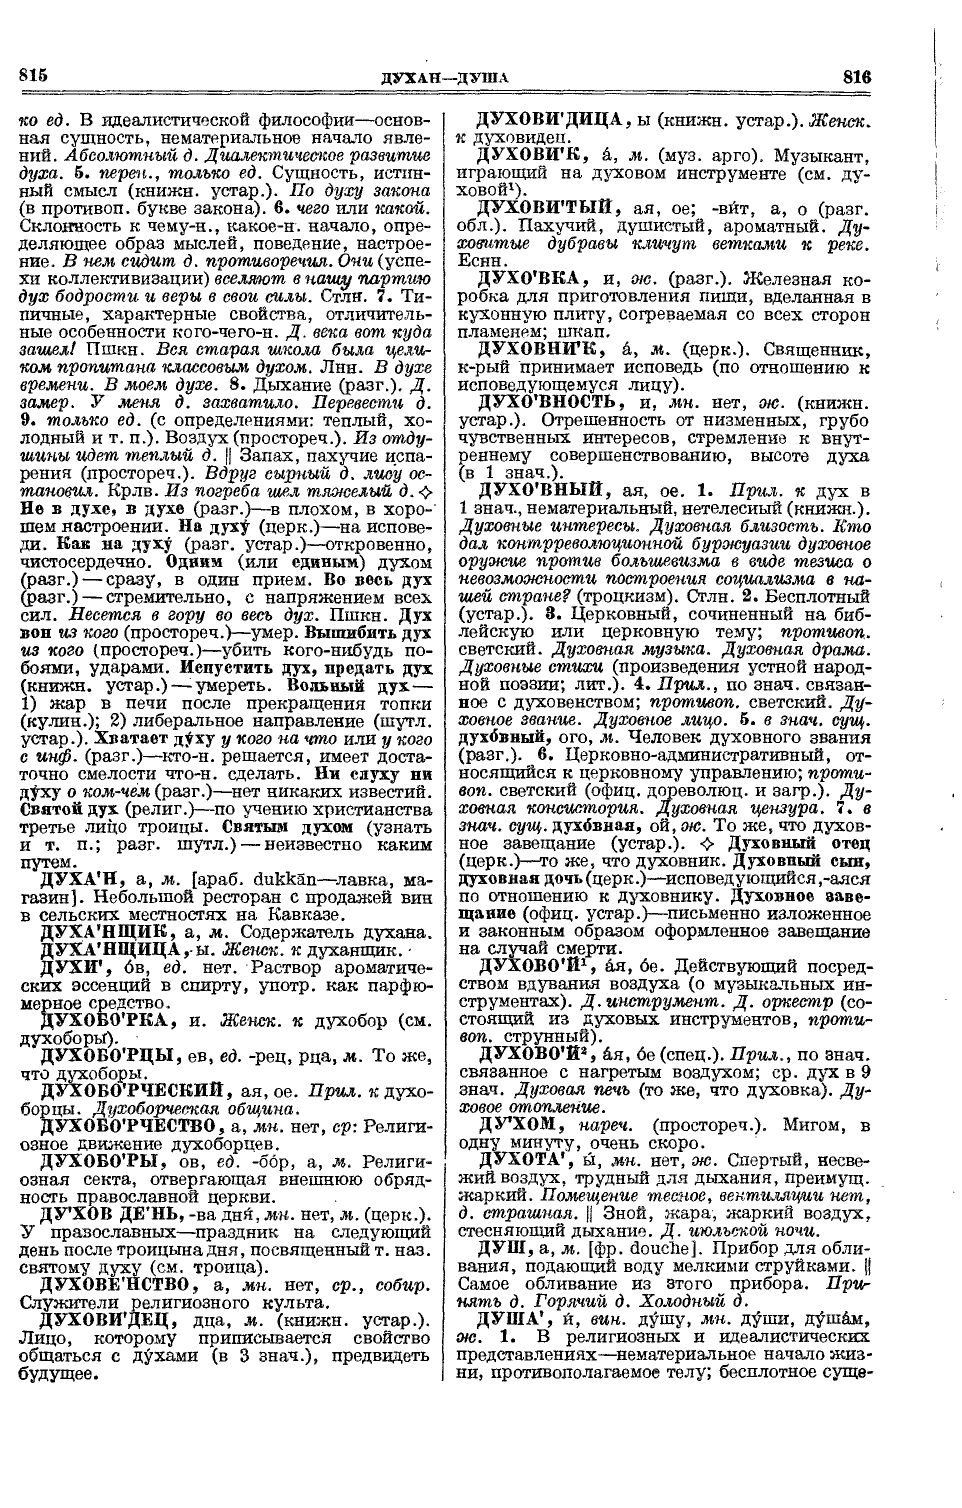 Фотокопия pdf / скан страницы 446 толкового словаря Ушакова (том 1)